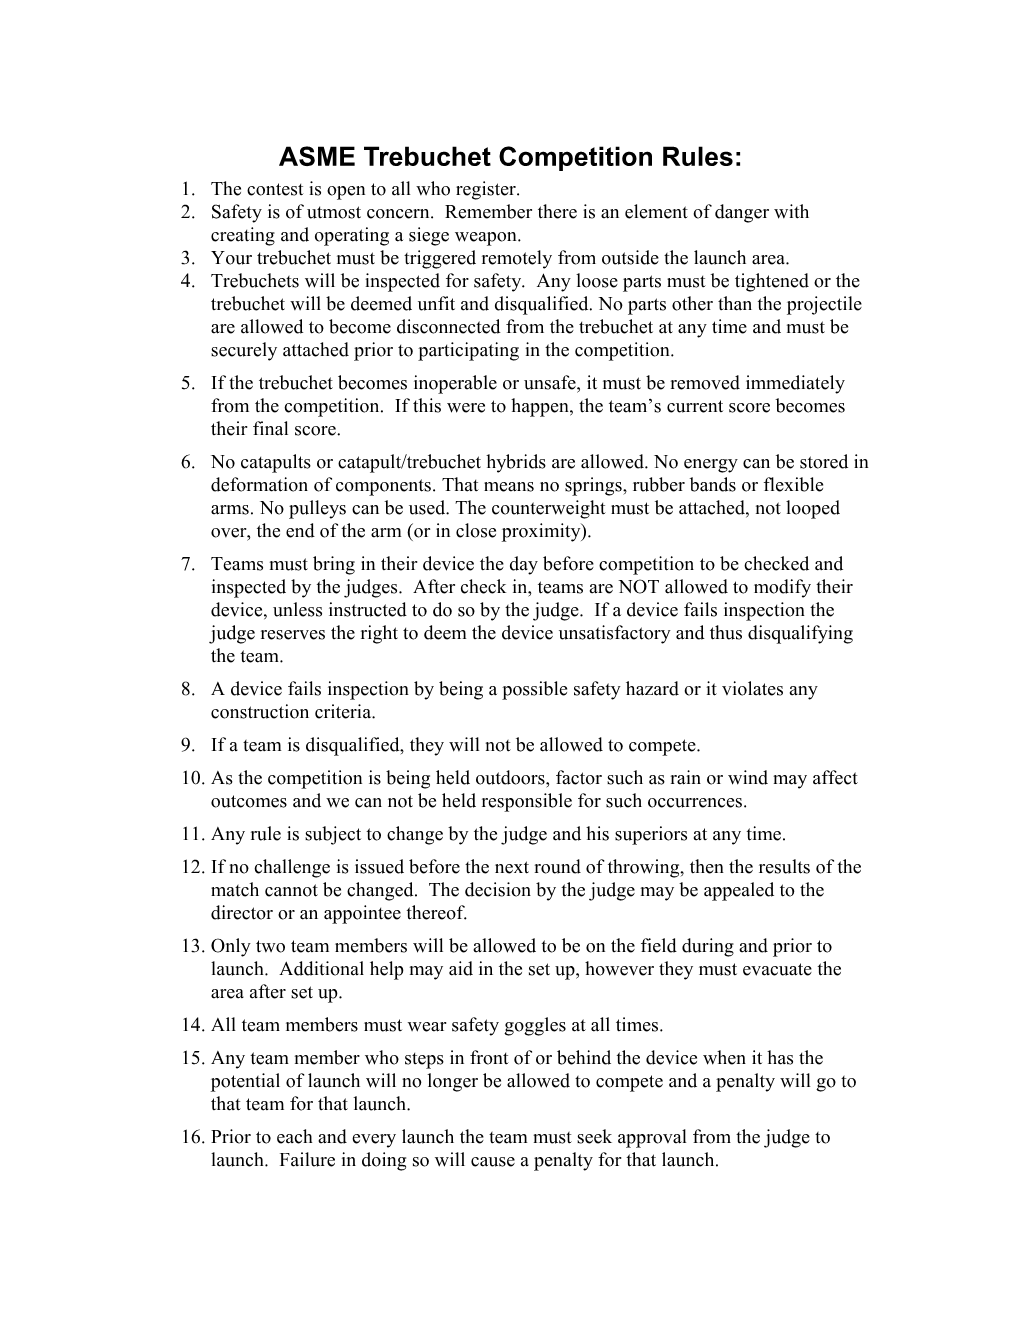 Trebuchet Design Rules